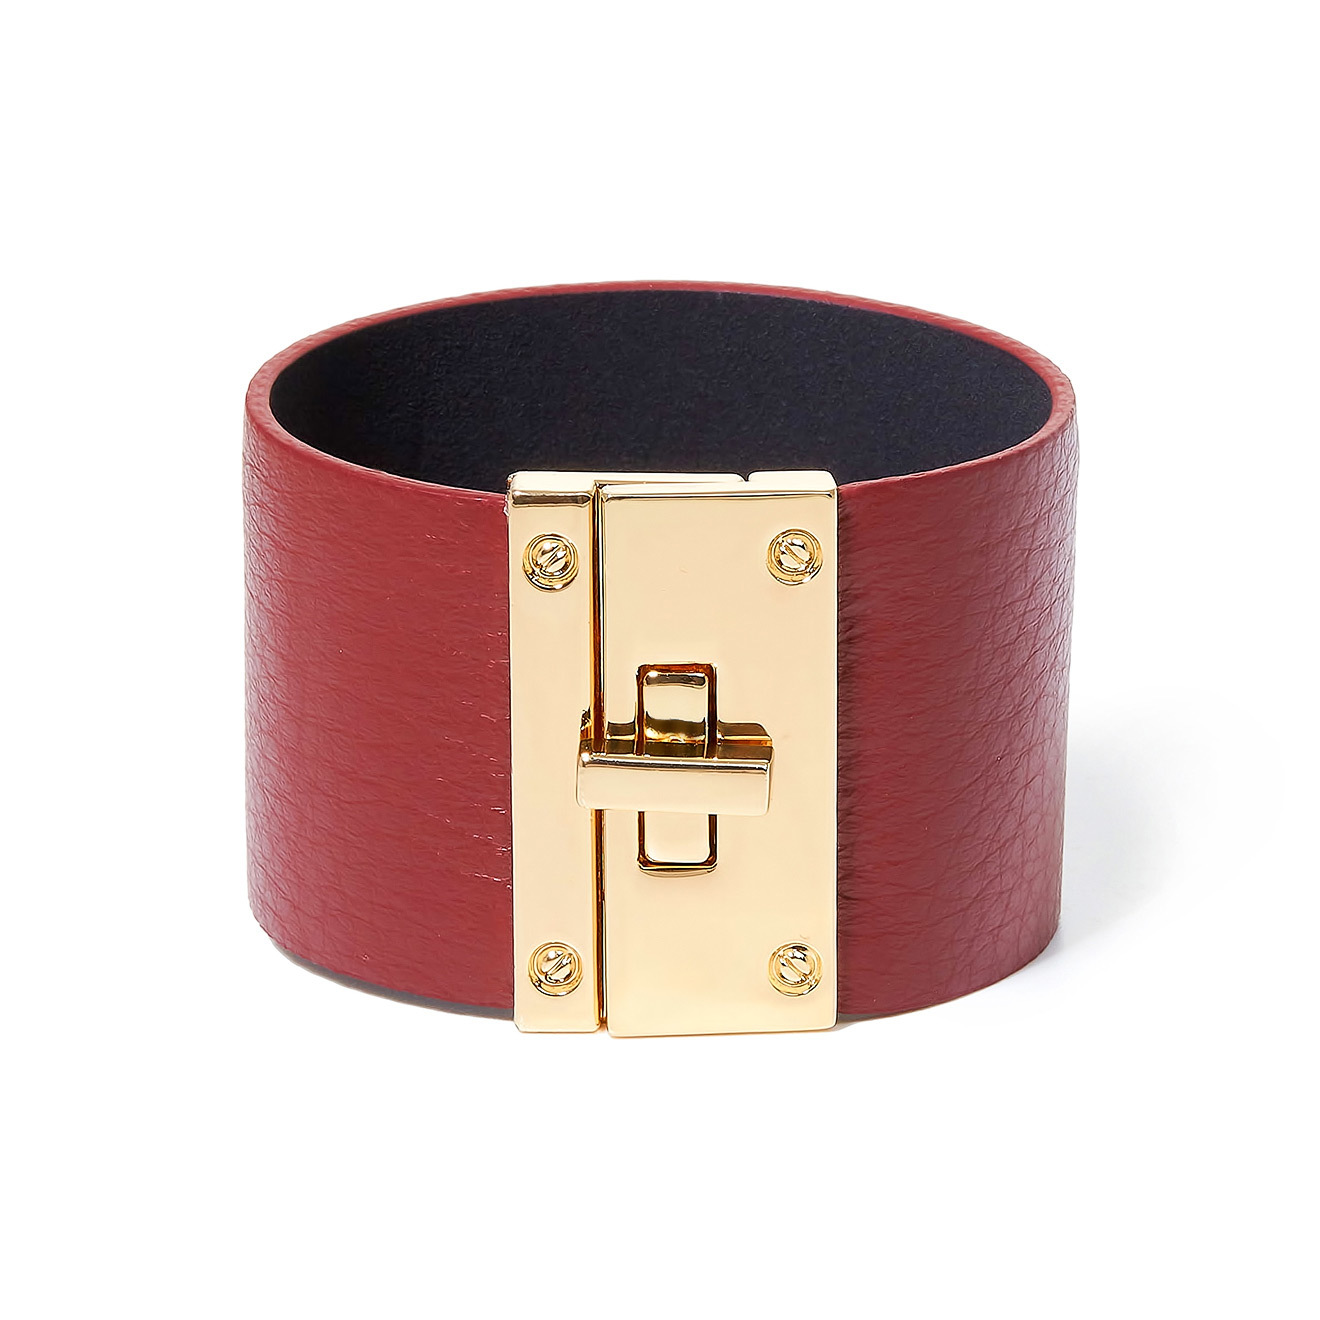 Tannum Бордовый кожаный браслет с металлическим замком tannum розовый кожаный браслет с золотистым квадратом